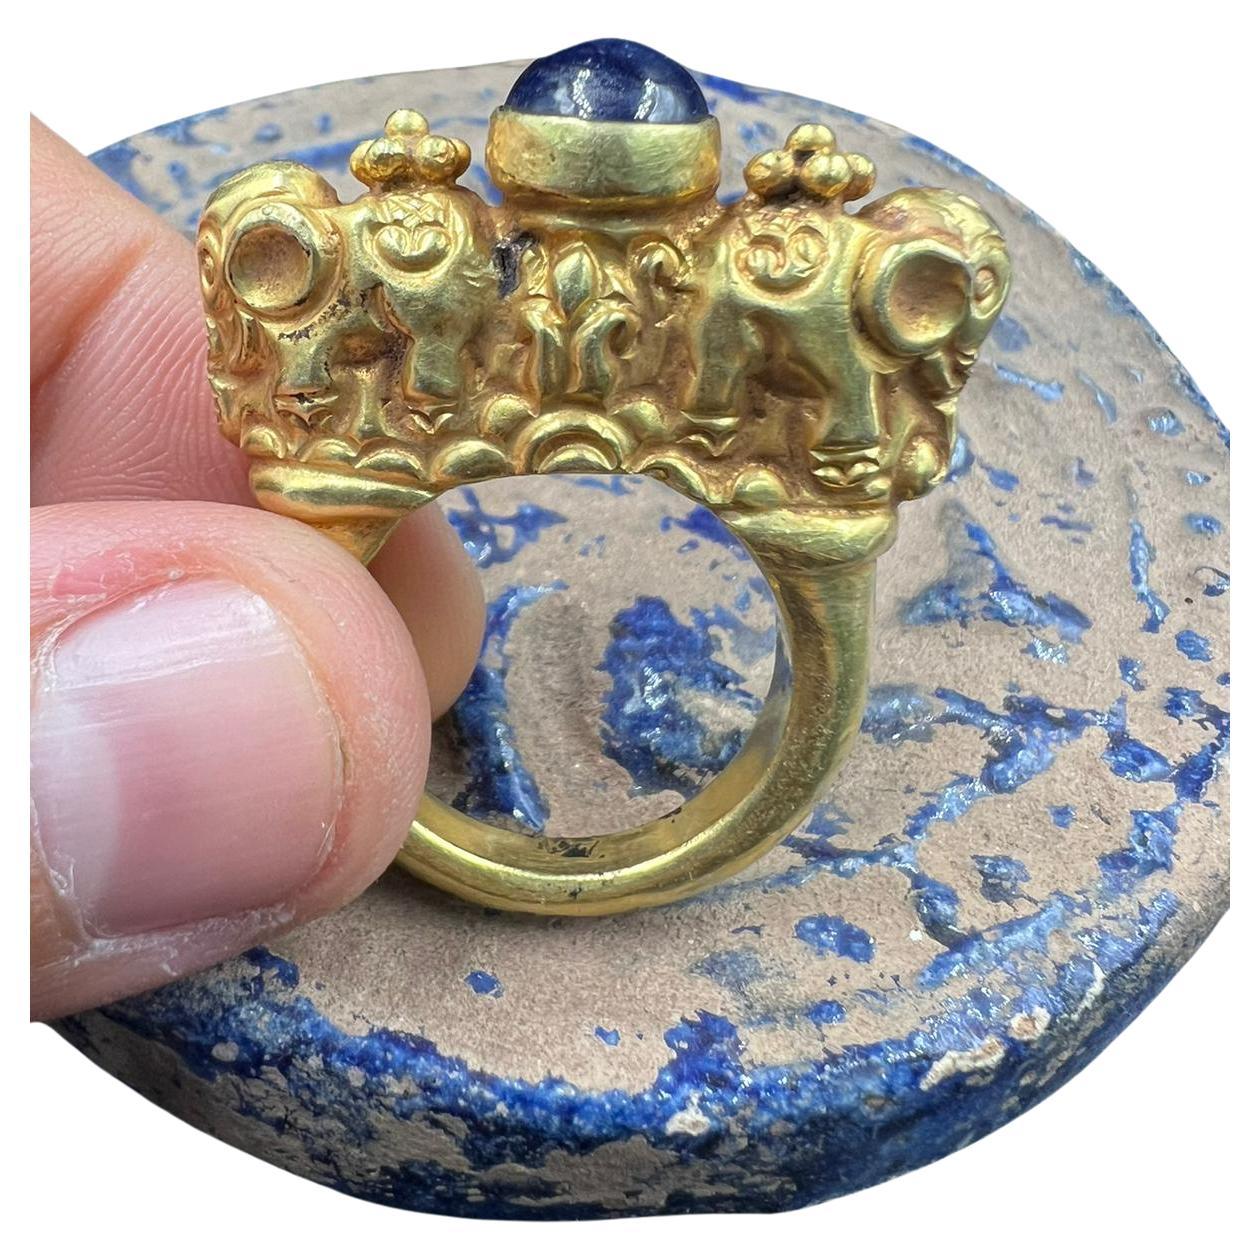 Bochic Curated antiken Ring aus Birma 18k massivem Gold & antiken Lapislazuli 

Diese Art von Ring sieht man in einem Museum
Südostasiatischer antiker Achat Edelstein Altbirmanischer Pyu Pagan Gold Ring

Dieser Ring aus der 